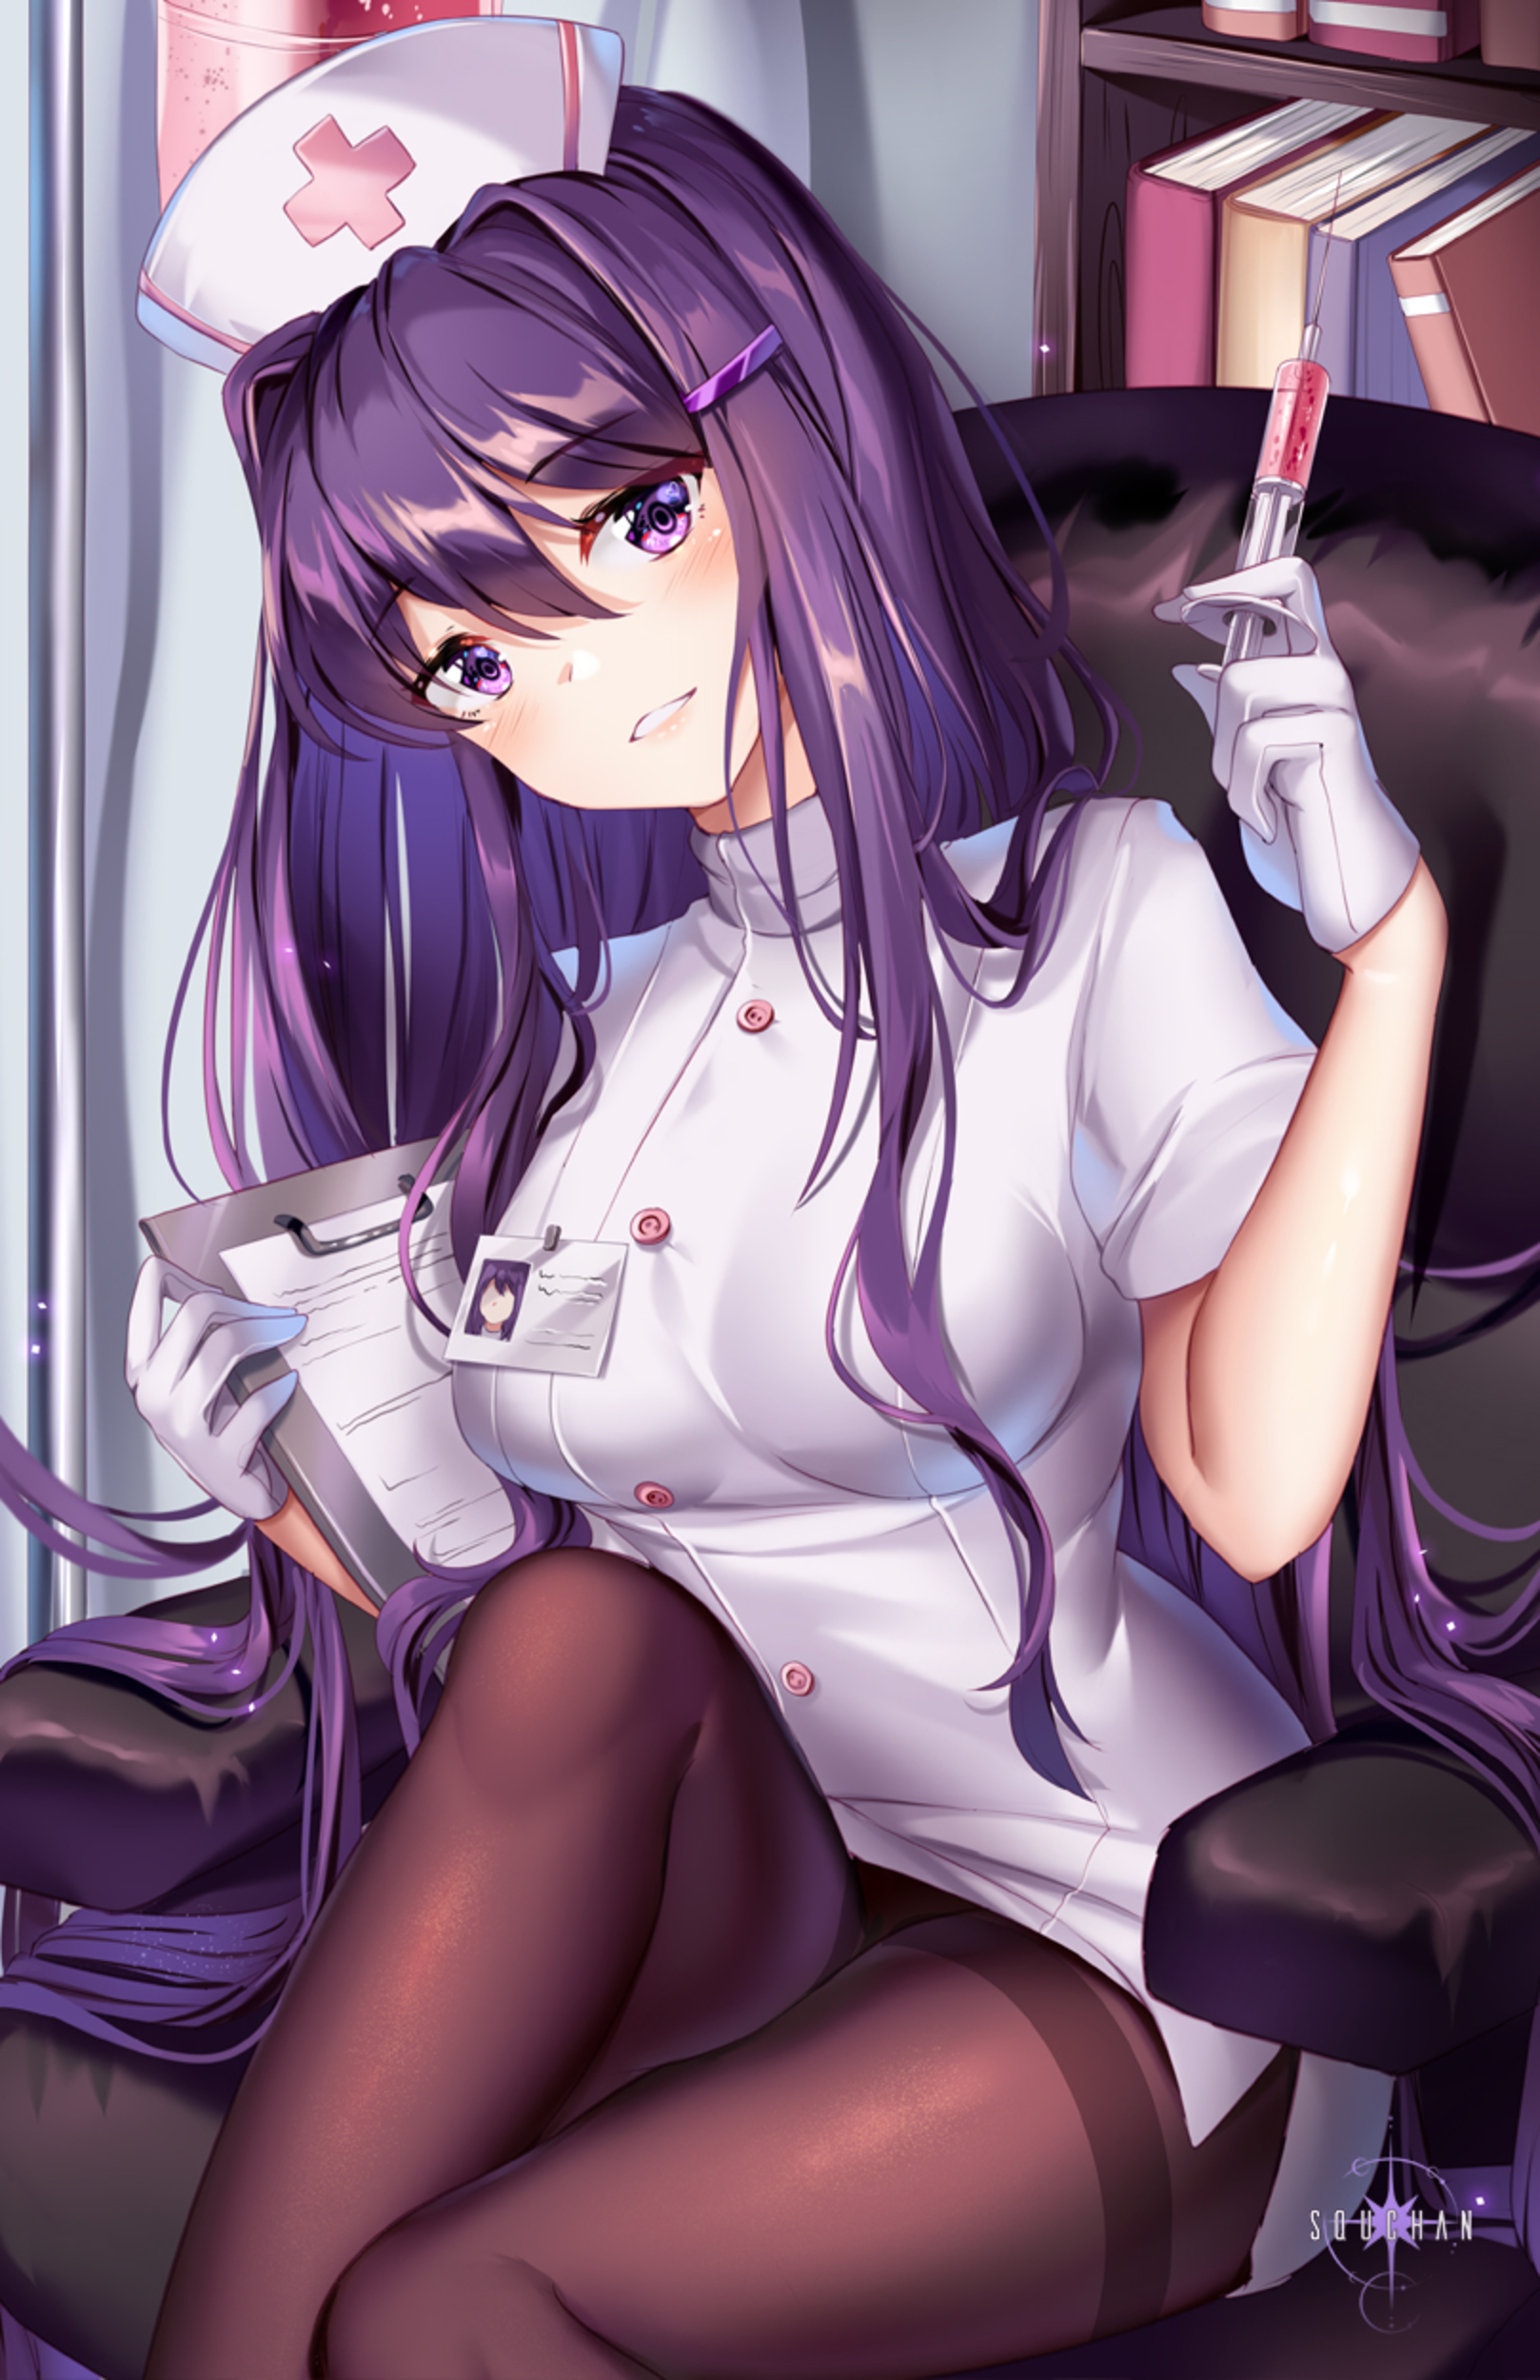 Anime Anime Girls Doki Doki Literature Club Yuri Doki Doki Literature Club Long Hair Purple Hair Sol 1618x2500